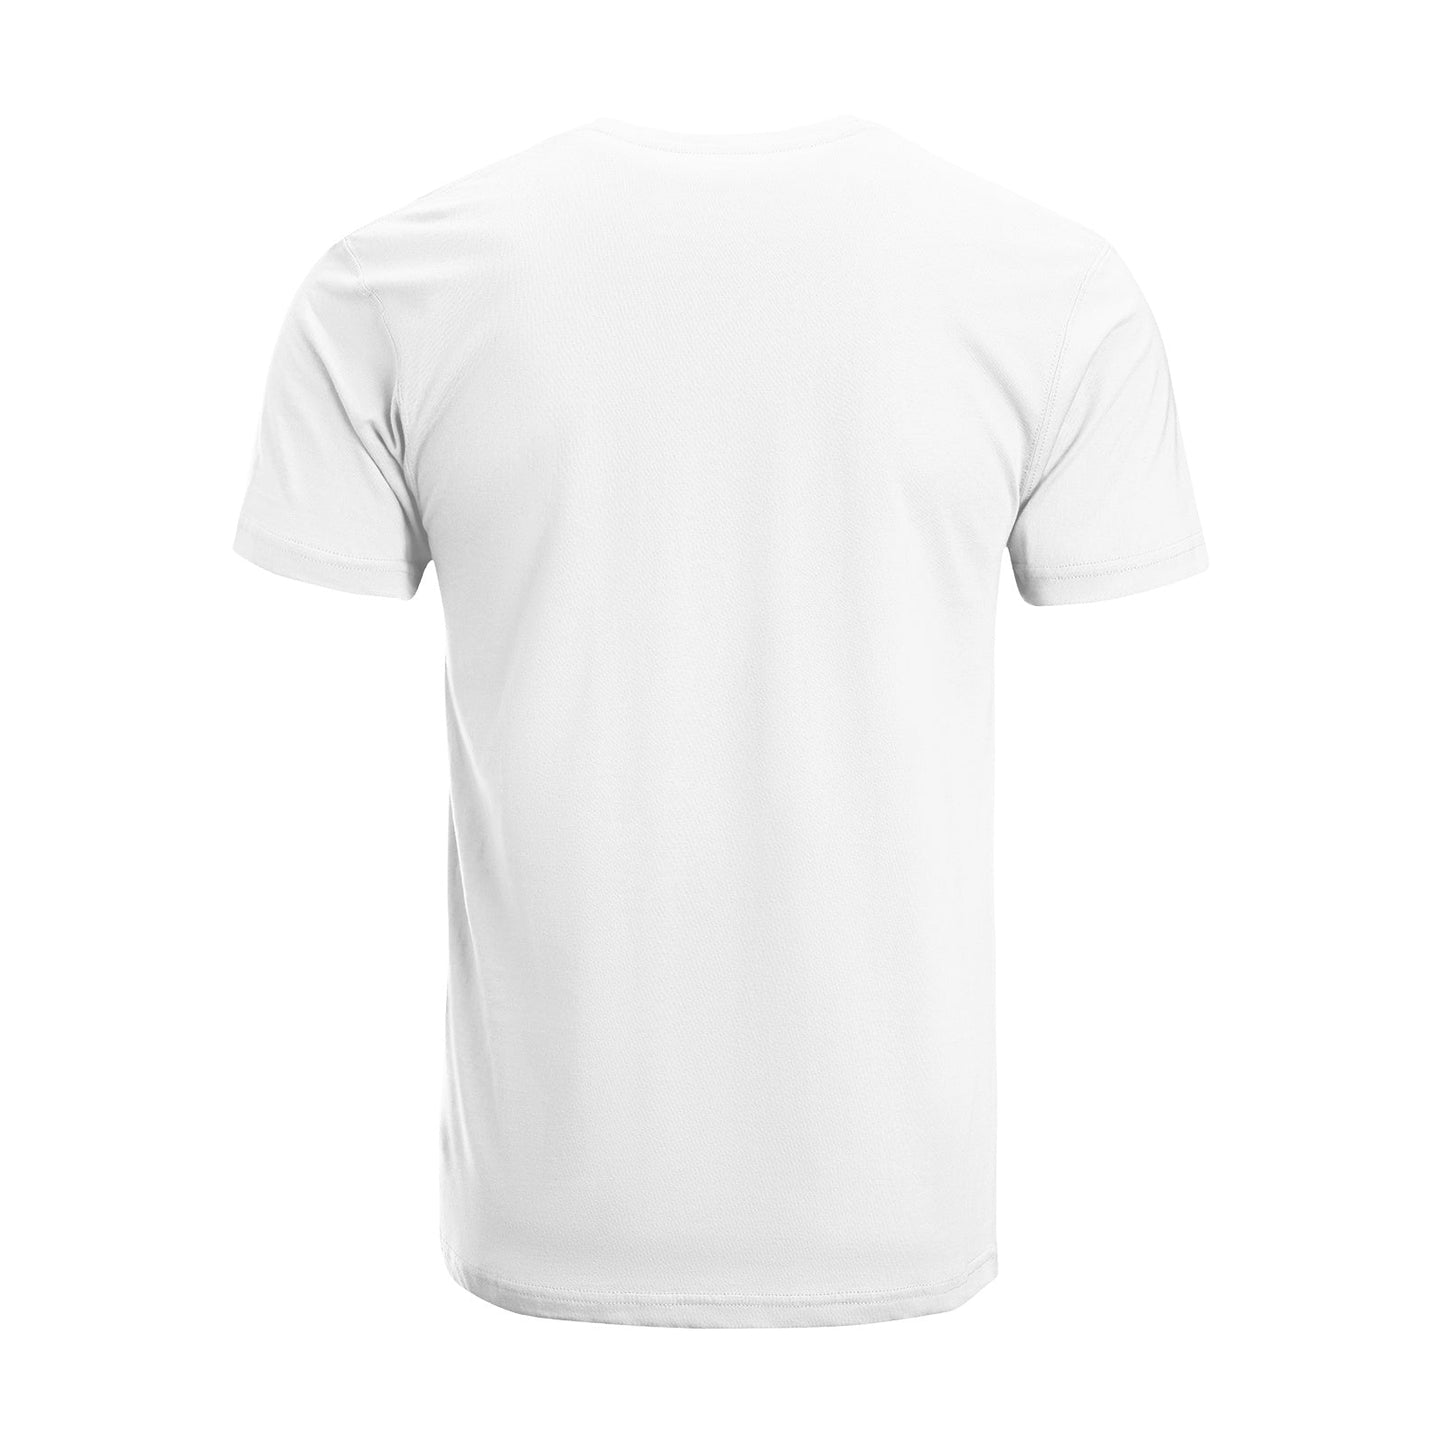 Unisex Short Sleeve Crew Neck Cotton Jersey T-Shirt TRUCK 17